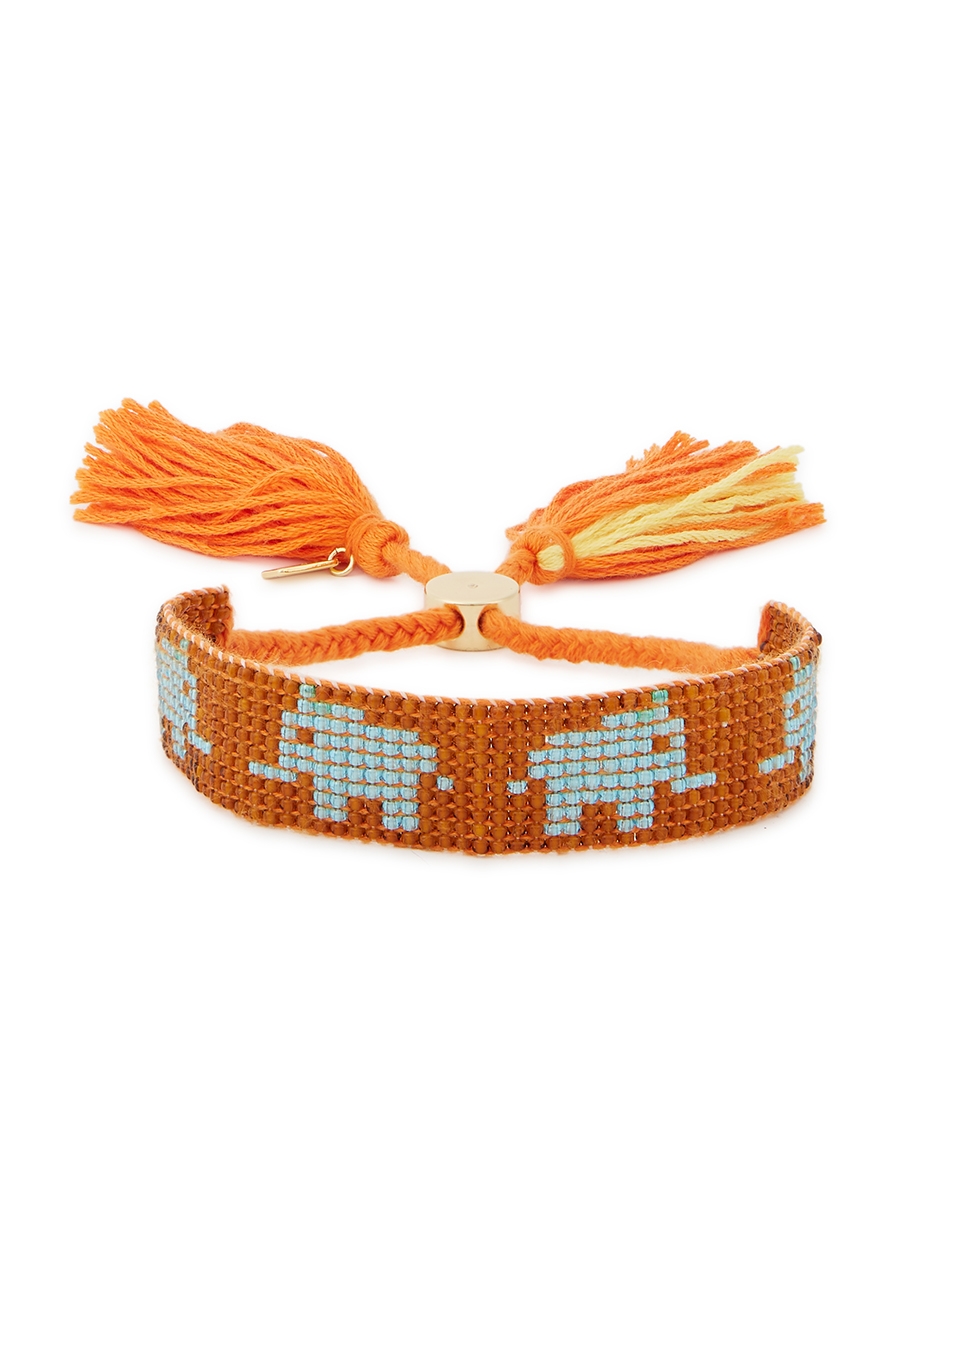 Elephant orange beaded rope bracelet